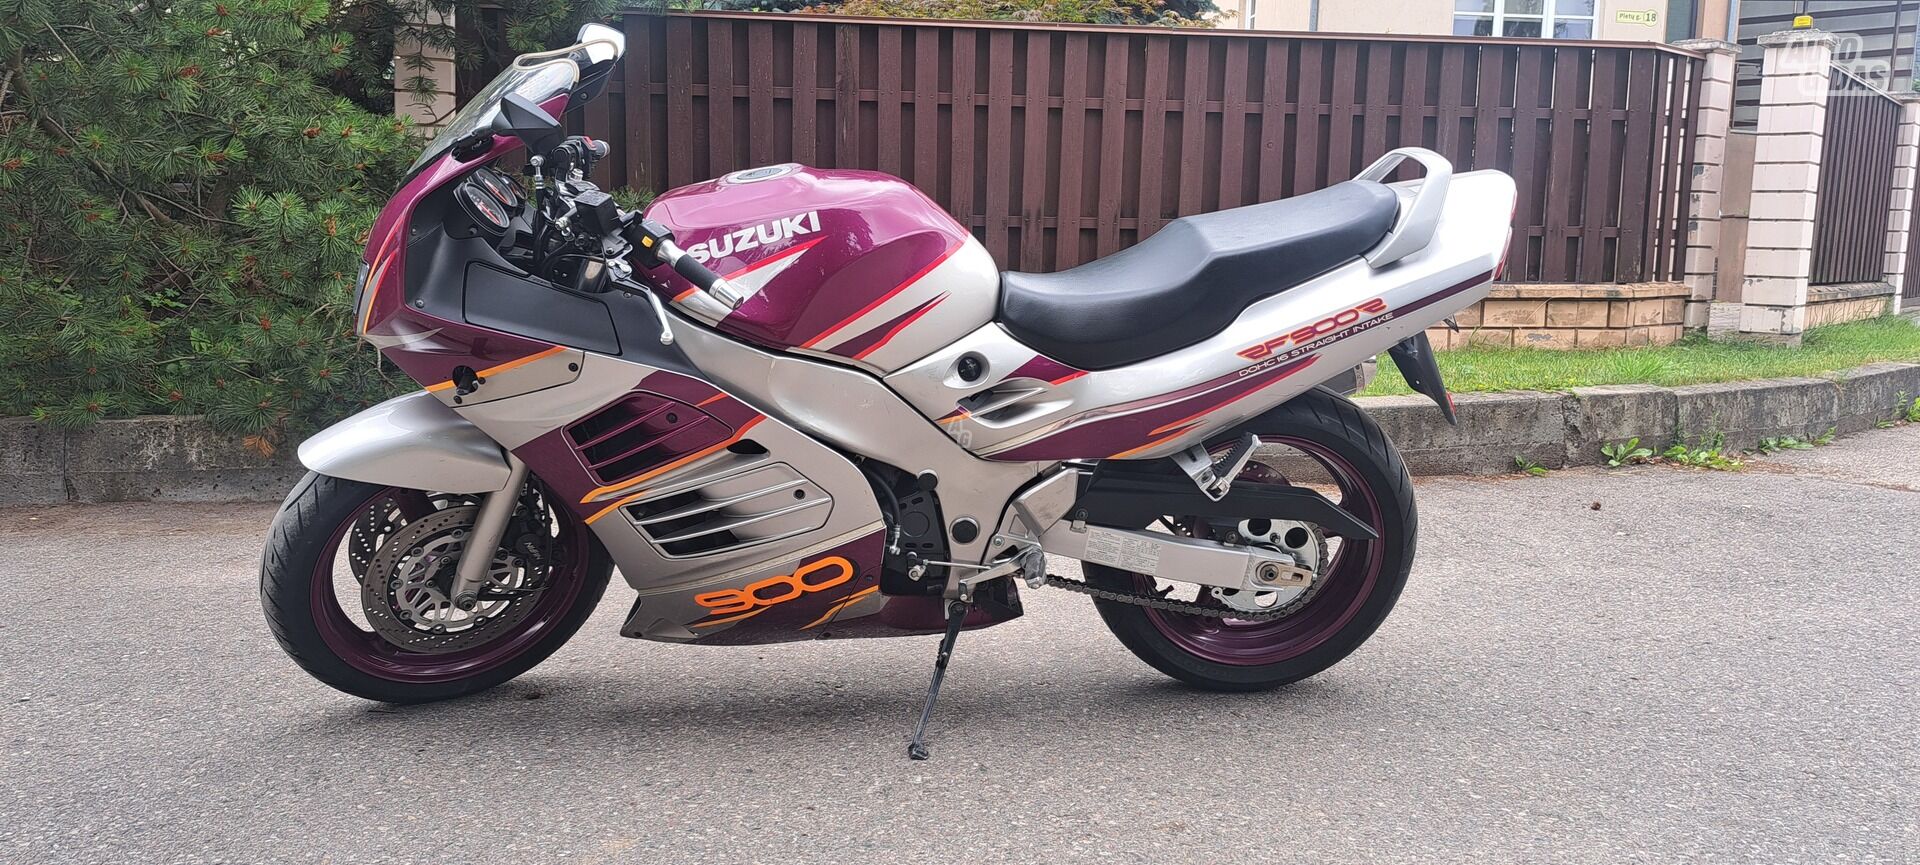 Suzuki RF 1995 y Sport / Superbike motorcycle